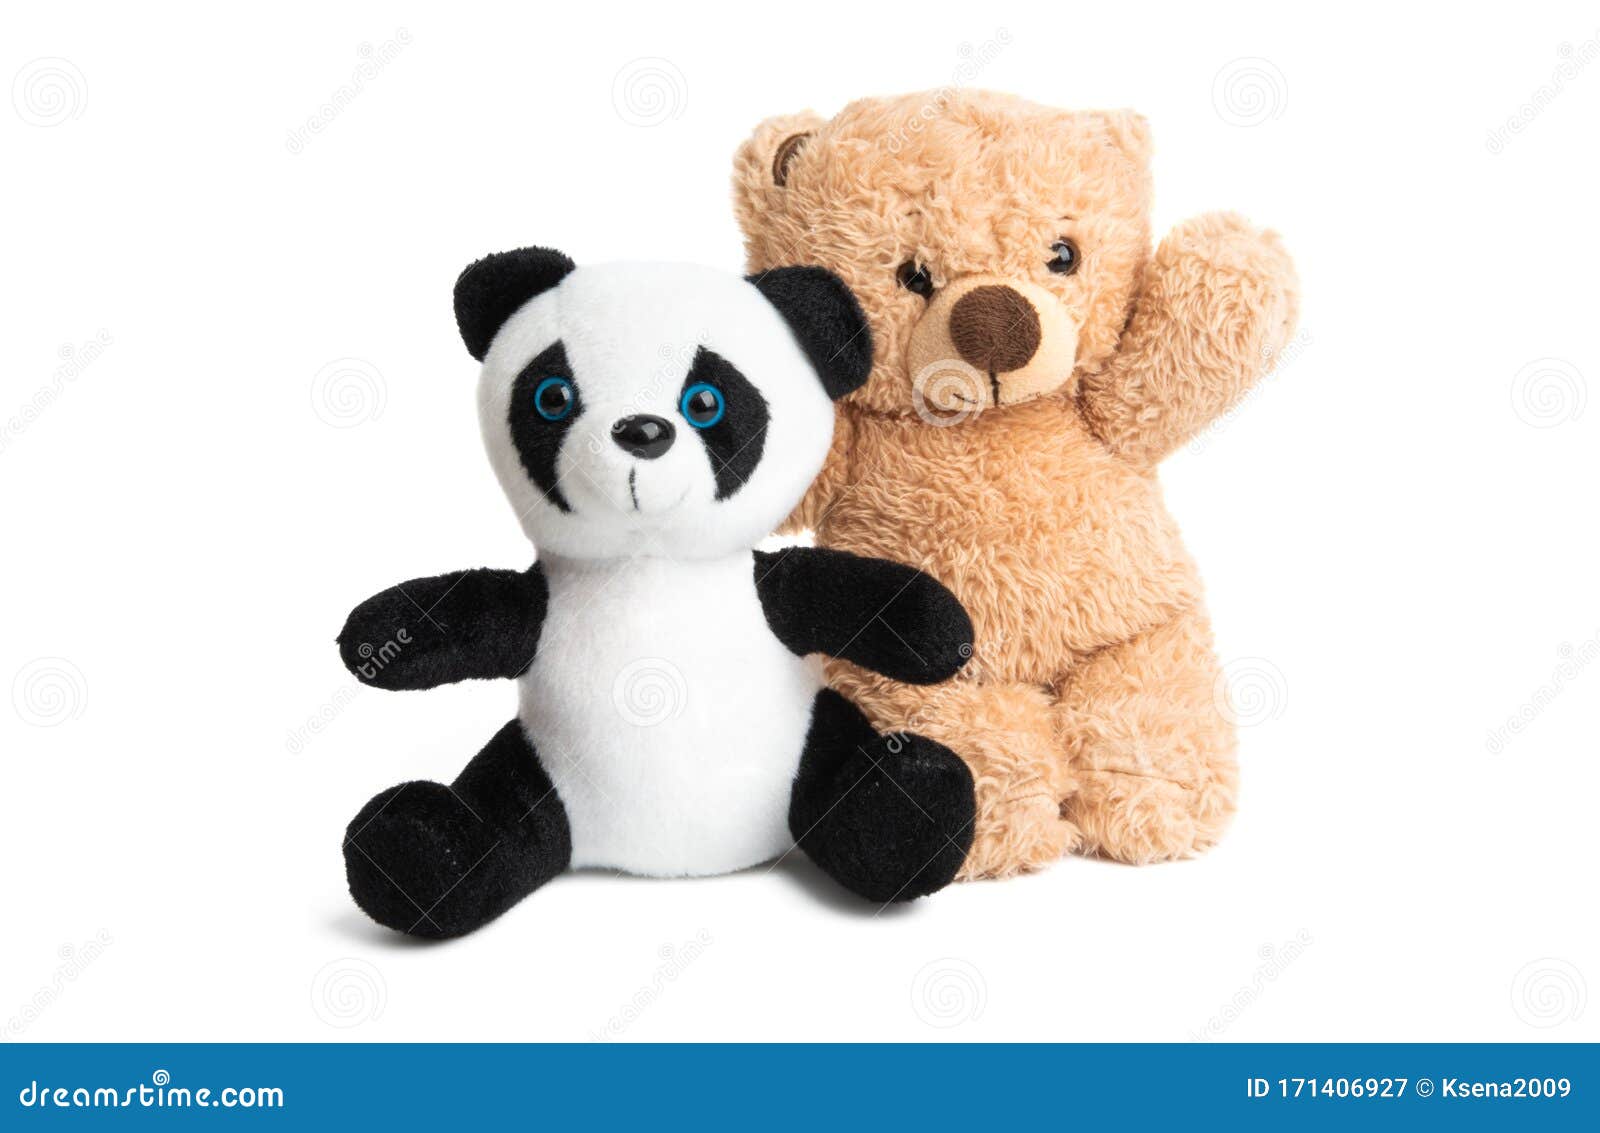 Soft panda bear isolated stock image. Image of doll - 171406927